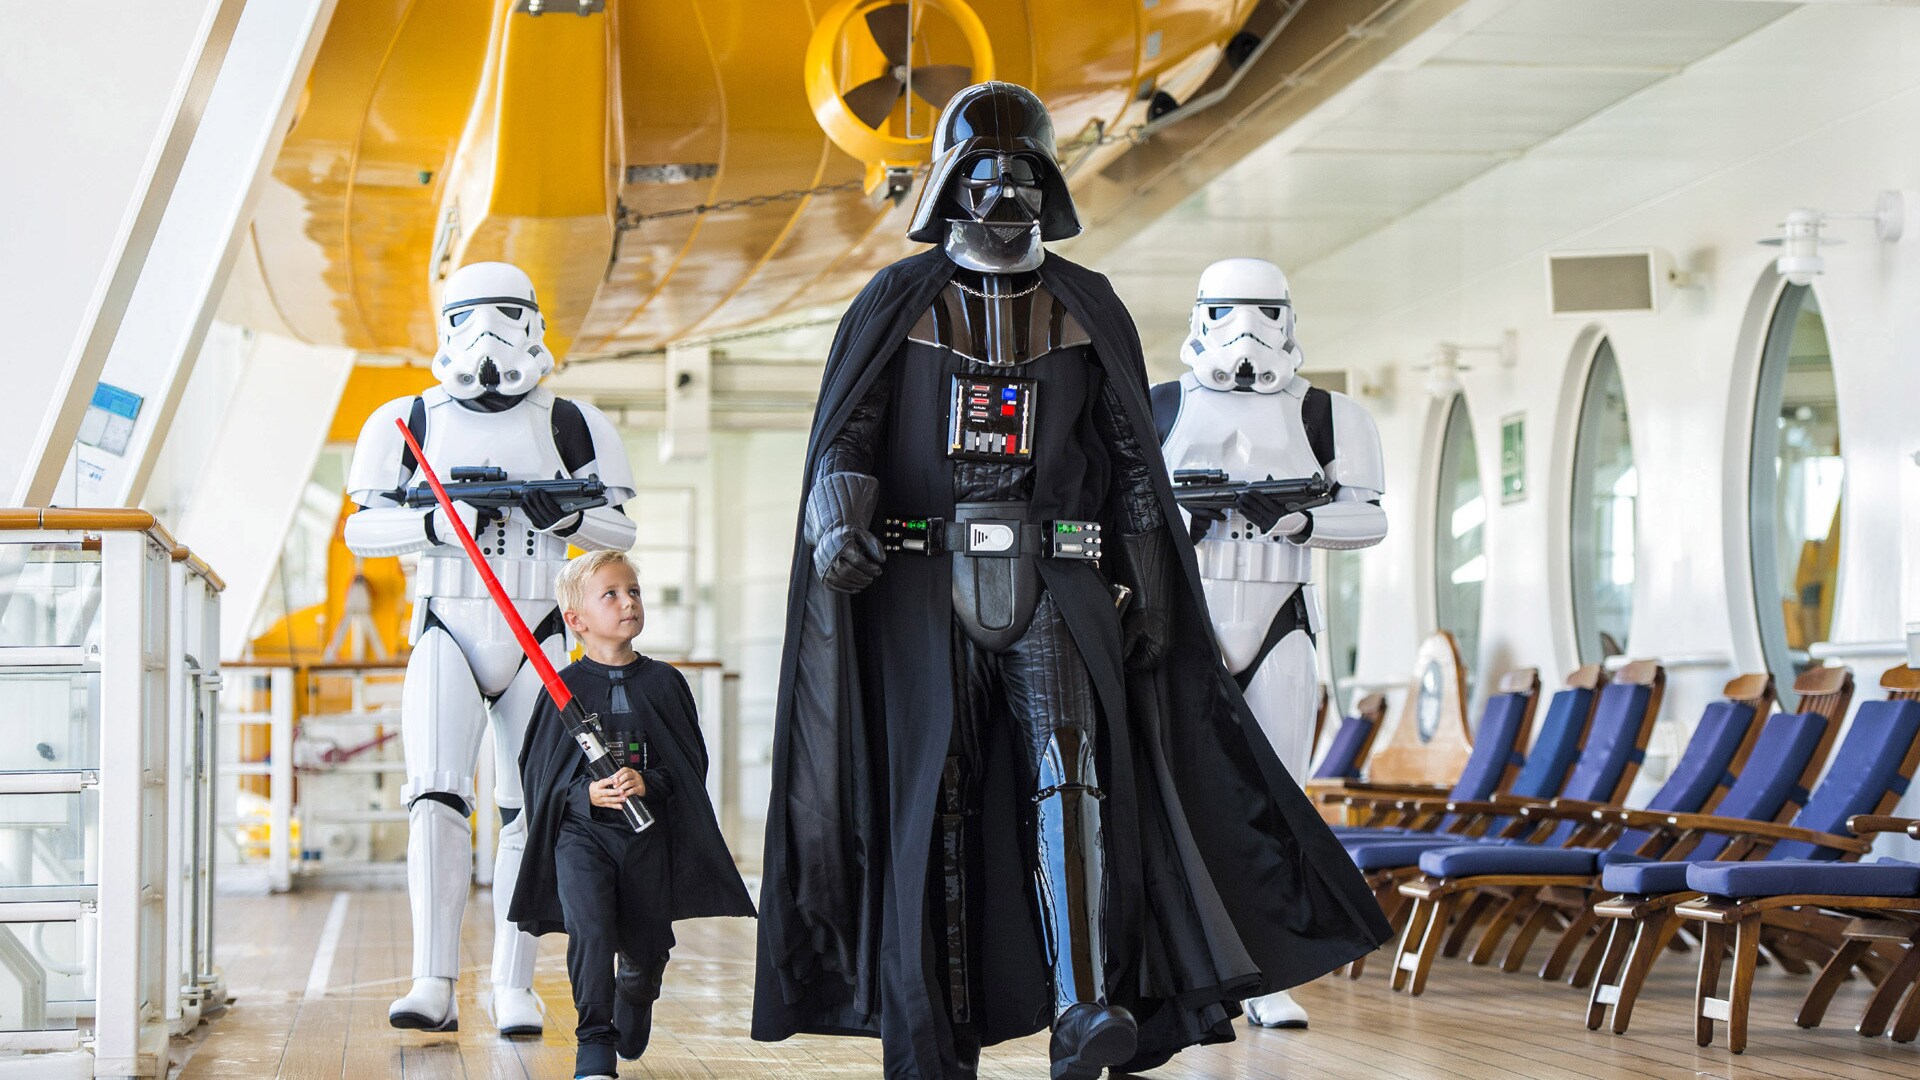 Darth Vader at Star Wars Day at Sea